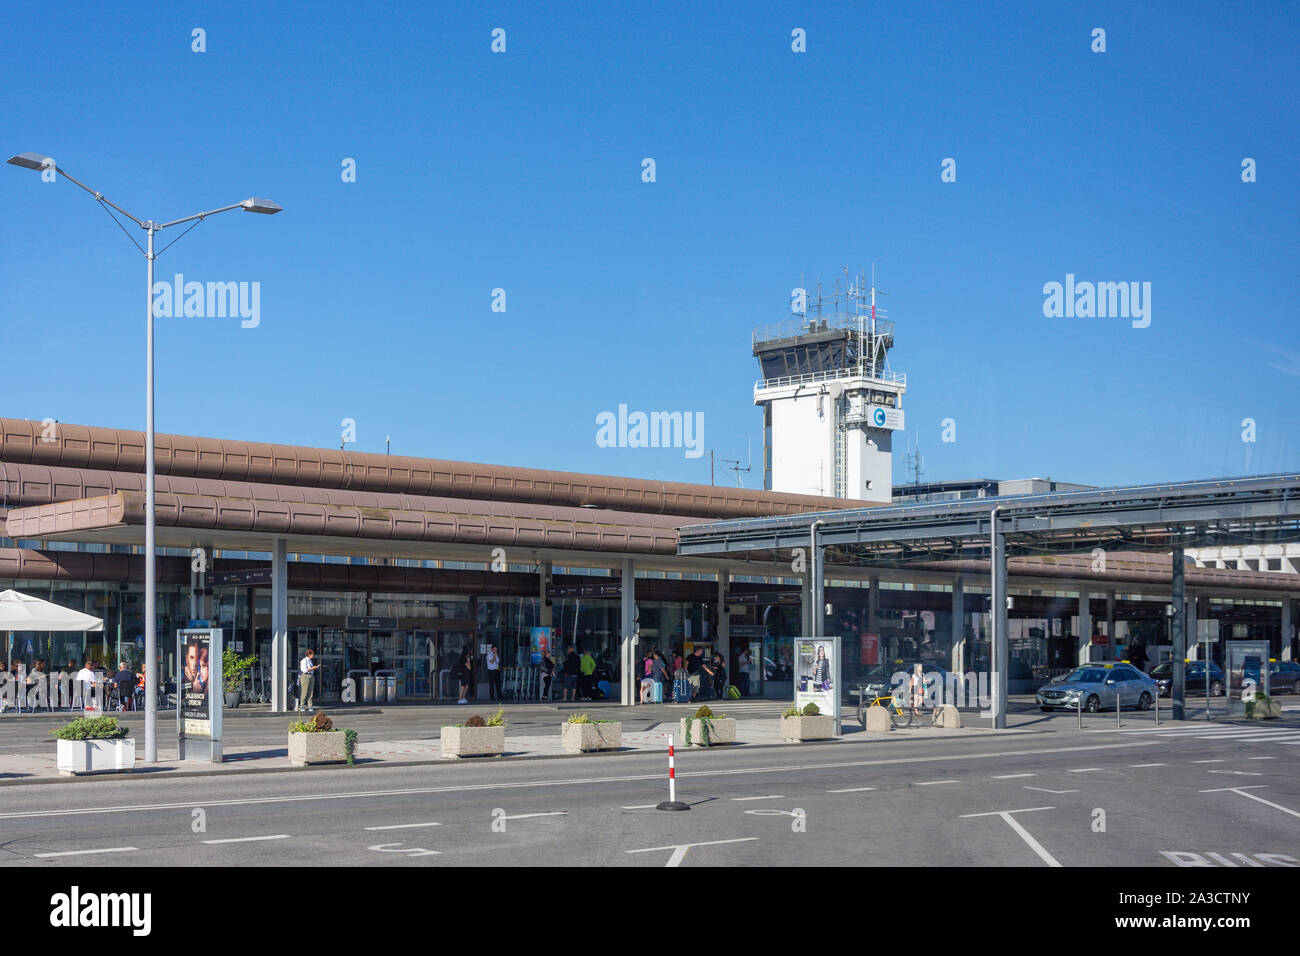 Terminal des arrivées et départ, l'Aéroport Jože Pučnik de Ljubljana, Ljubljana, Slovénie, Brnik Banque D'Images